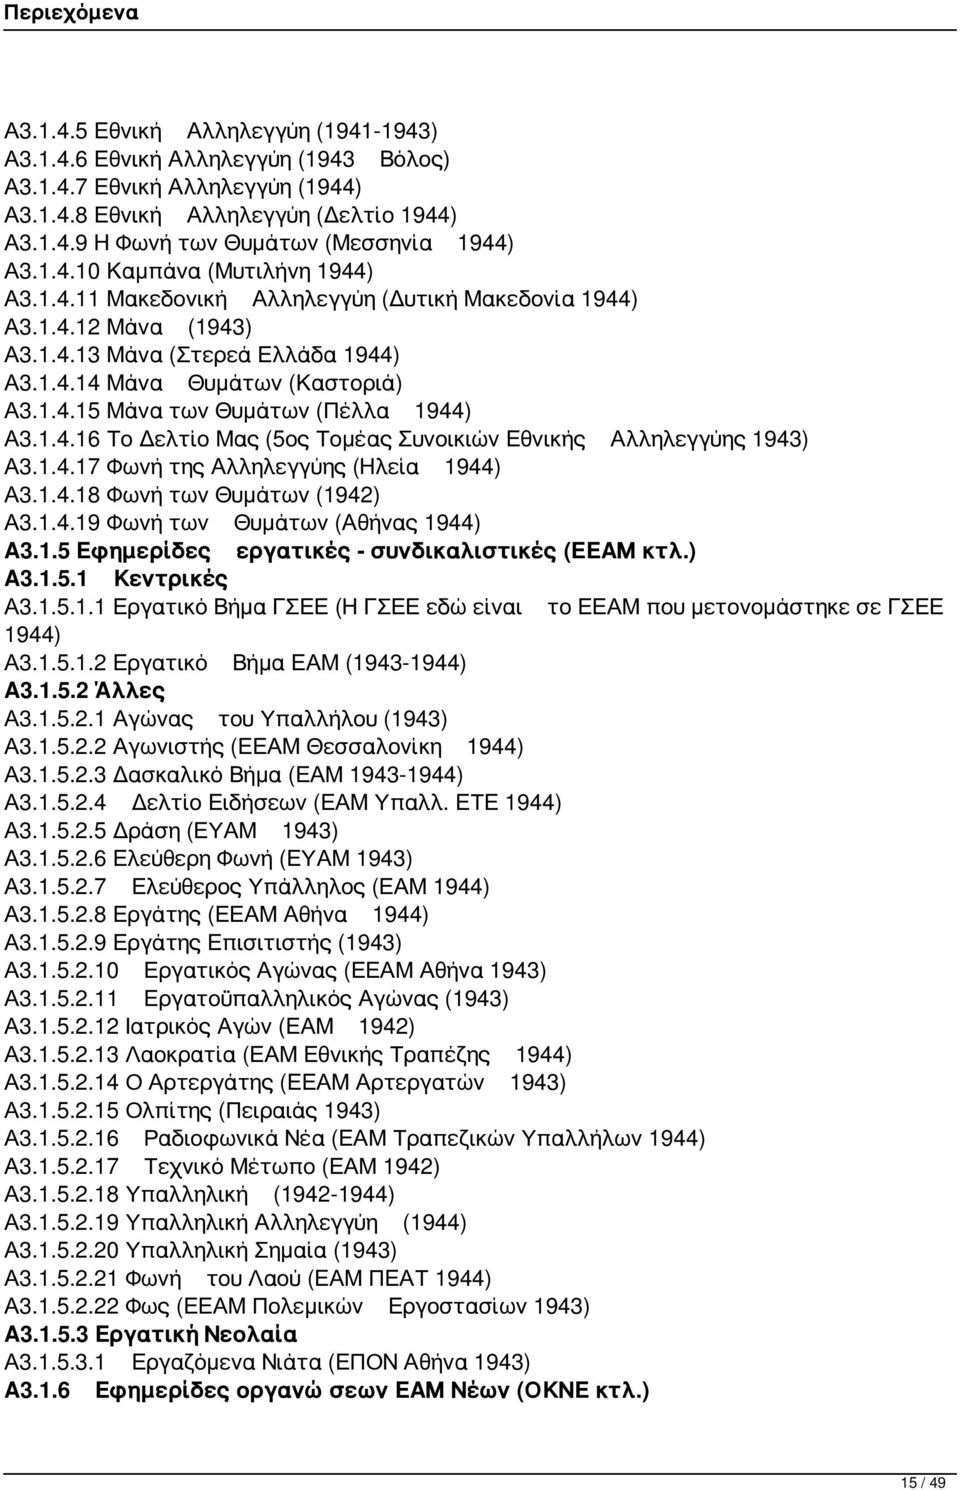 1.4.16 Το Δελτίο Μας (5ος Τομέας Συνοικιών Εθνικής Αλληλεγγύης 1943) Α3.1.4.17 Φωνή της Αλληλεγγύης (Ηλεία 1944) Α3.1.4.18 Φωνή των Θυμάτων (1942) Α3.1.4.19 Φωνή των Θυμάτων (Αθήνας 1944) Α3.1.5 Εφημερίδες εργατικές - συνδικαλιστικές (ΕΕΑΜ κτλ.